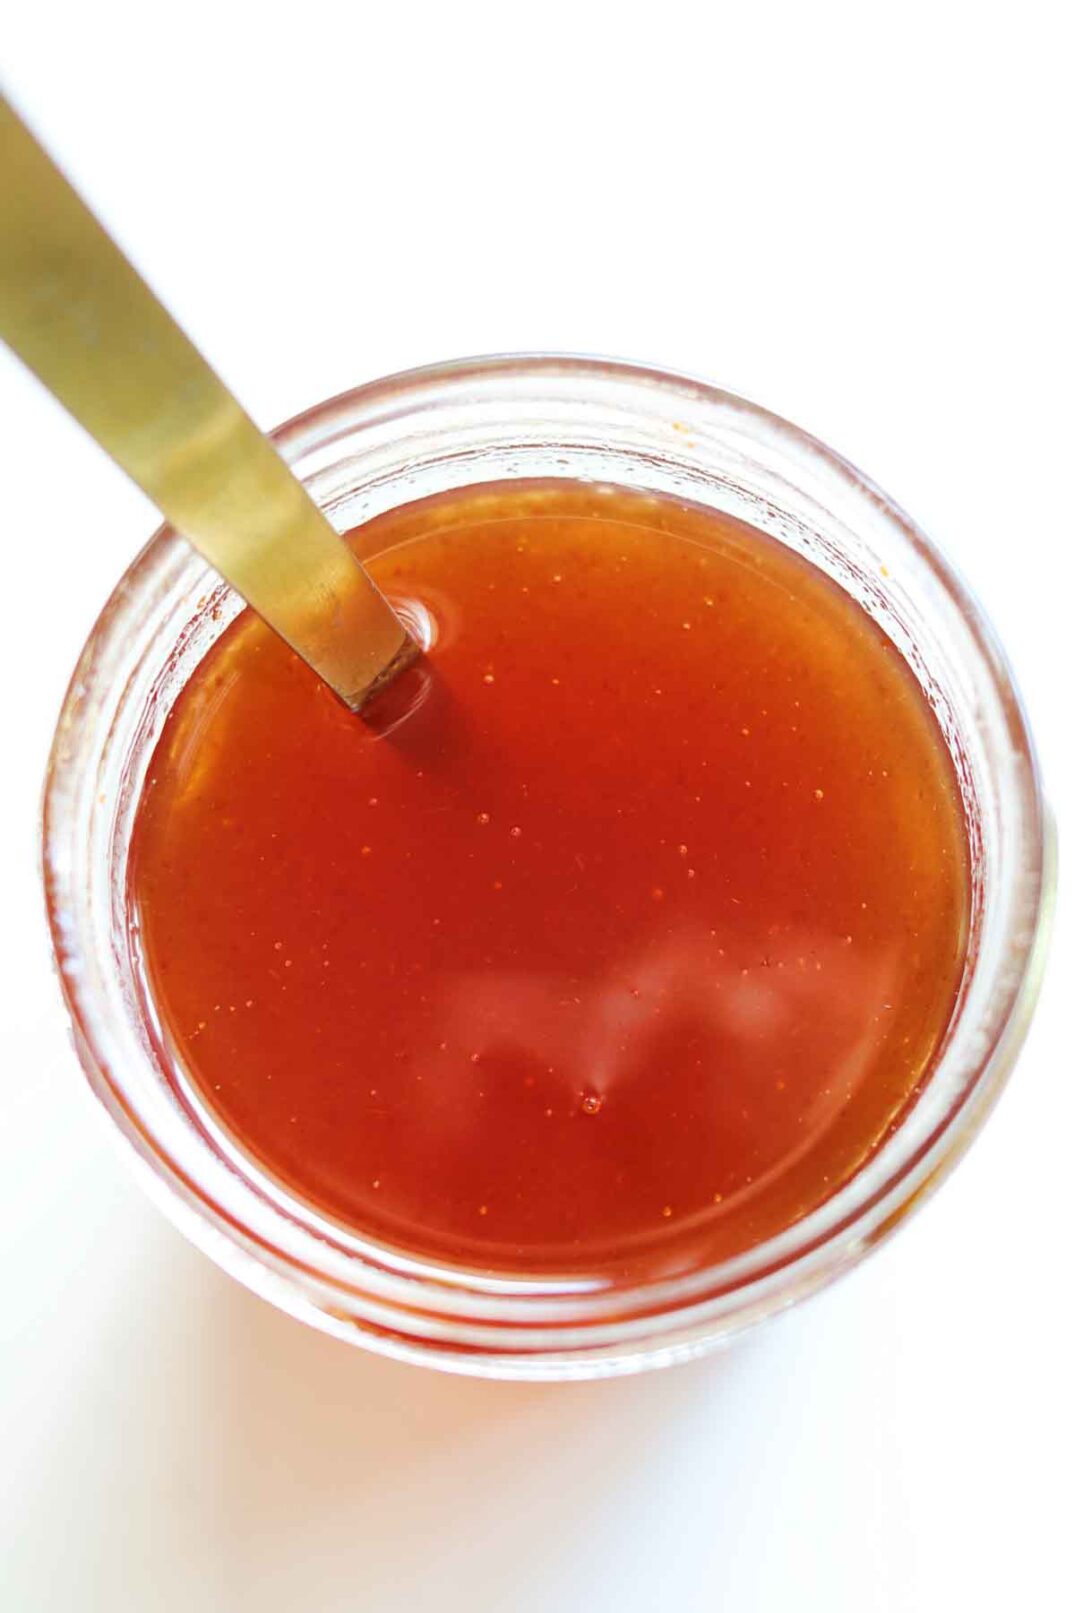 an overhead view of a jar of homemade hot honey sauce